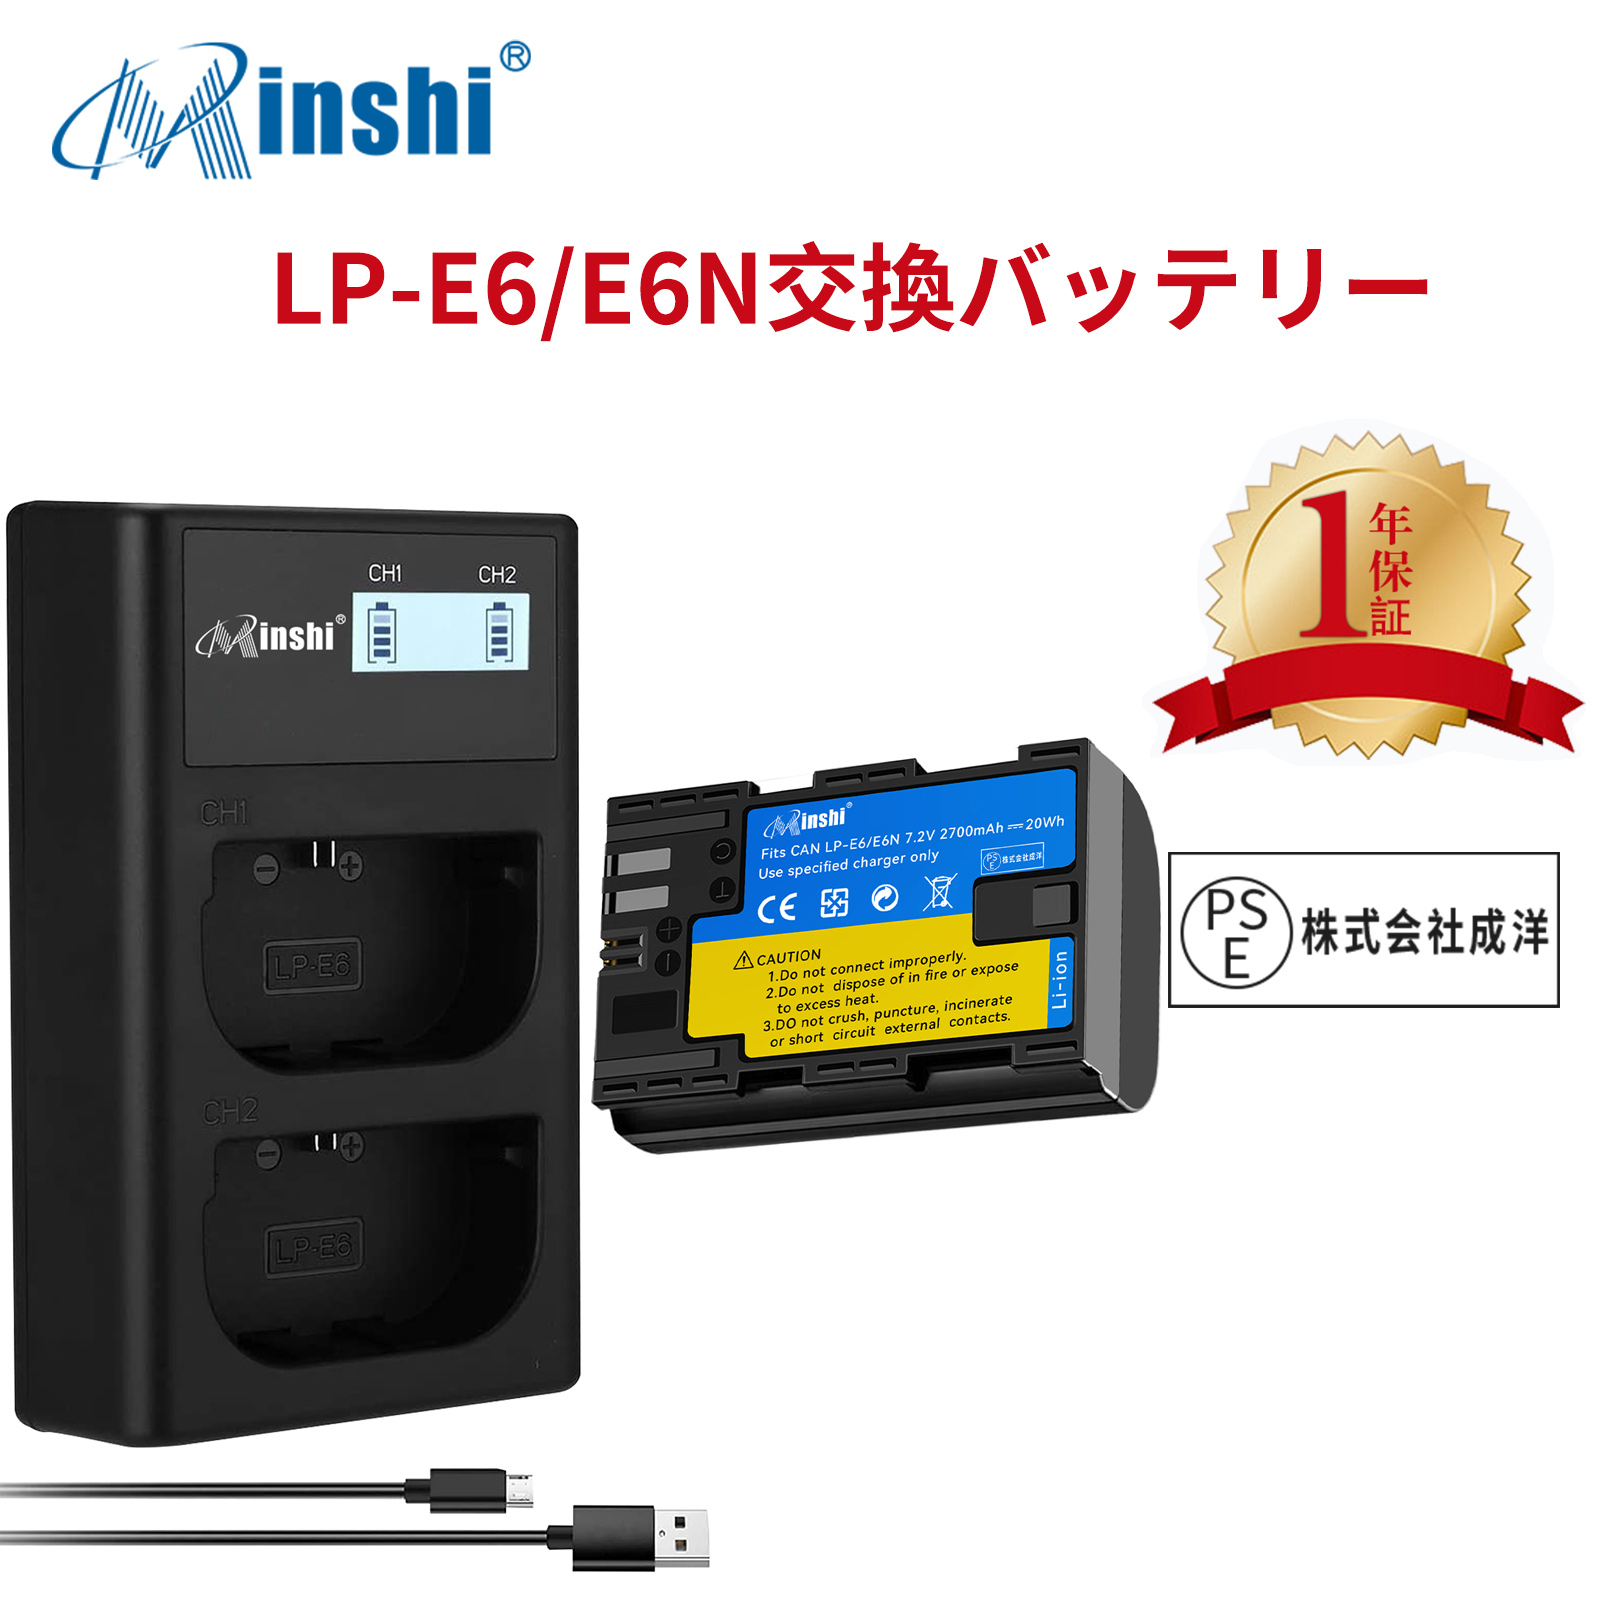 【1年保証】minshi Canon EOS 5D MarkIII【2700mAh 】【互換急速USBチャージャー】 高品質 LP-E6NH 交換用バッテリー